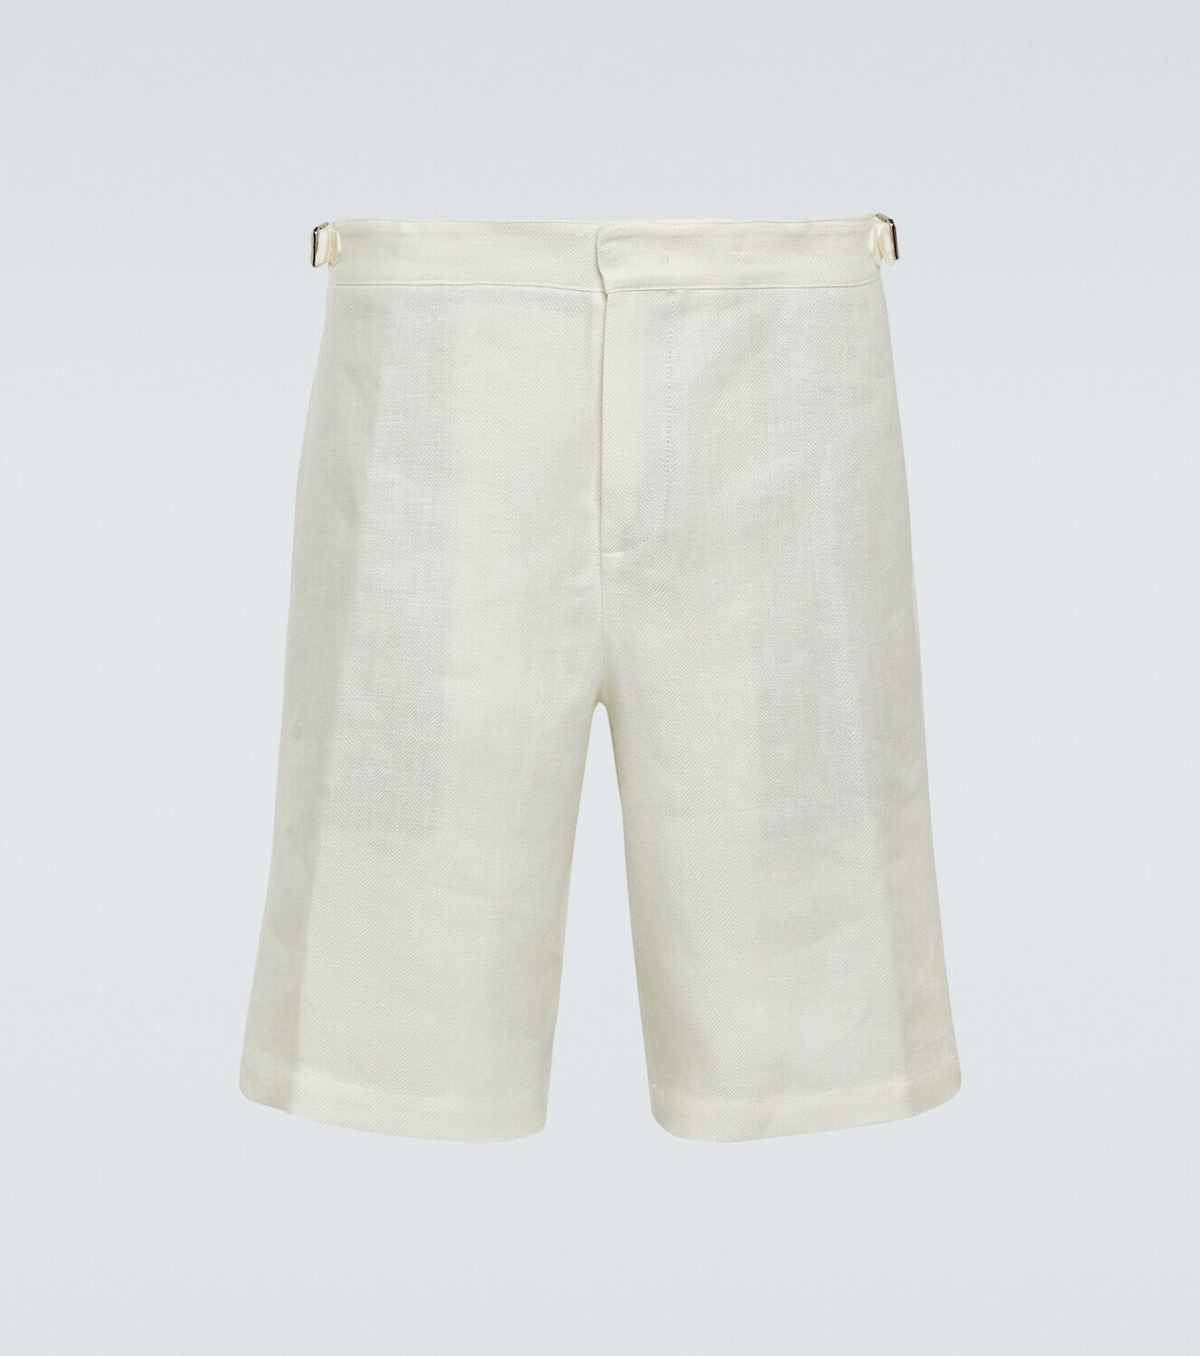 Loro Piana Majuro Bermuda linen shorts